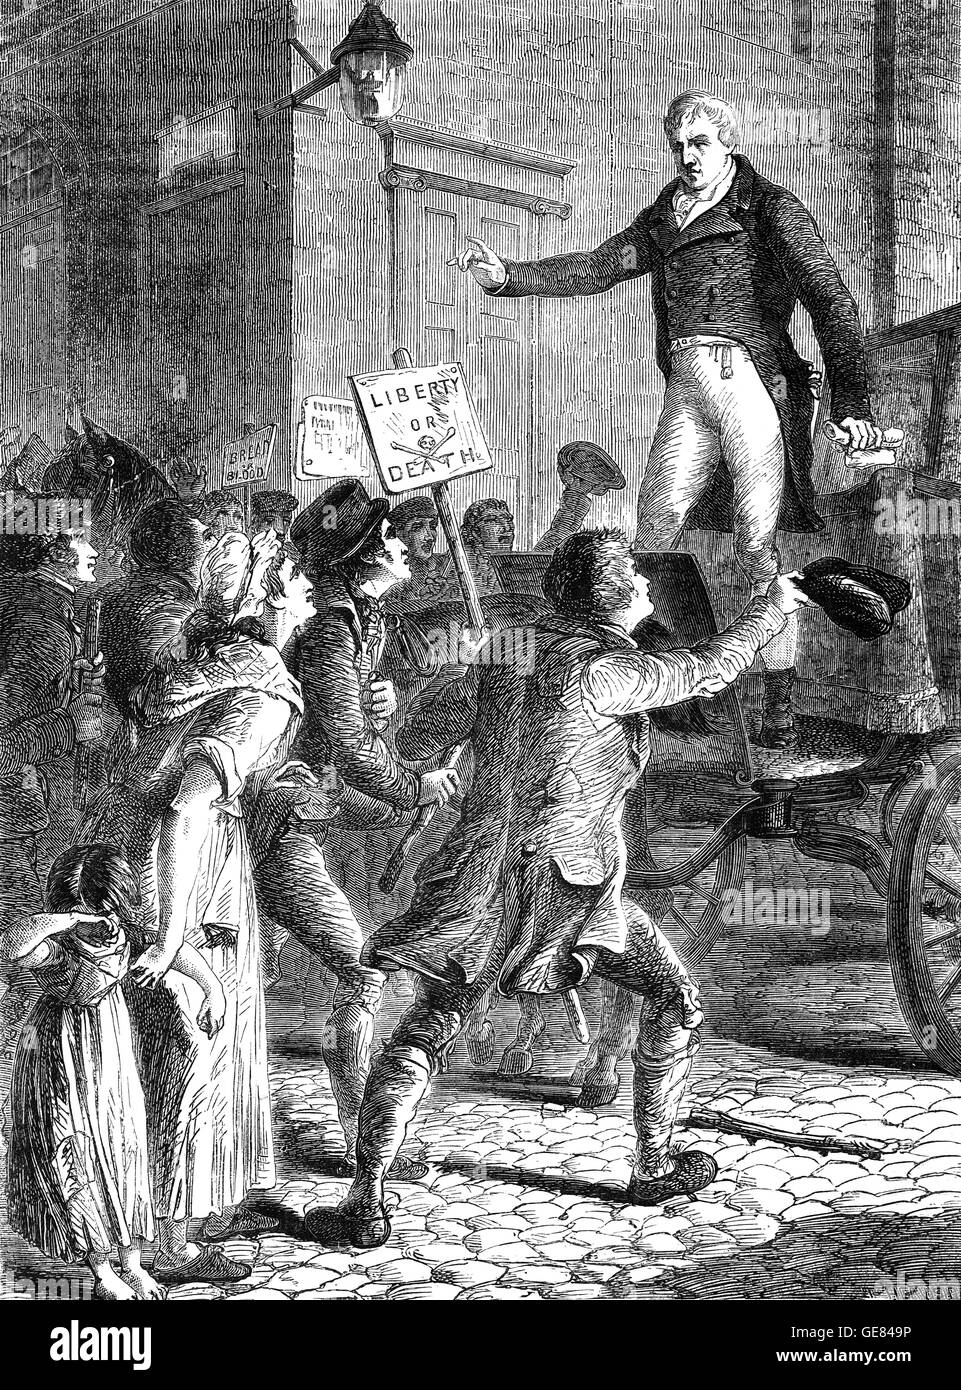 Henry "Redner" Hunt (1773 – 1835) der britischen radikalen Sprecher und Rührwerk Adressierung Menschen in Manchester. Ein Pionier der Arbeiterklasse Radikalismus und einen wichtigen Einfluss auf die späteren Chartist Bewegung, befürwortete er Parlamentsreform und die Abschaffung der Corn Laws. Stockfoto